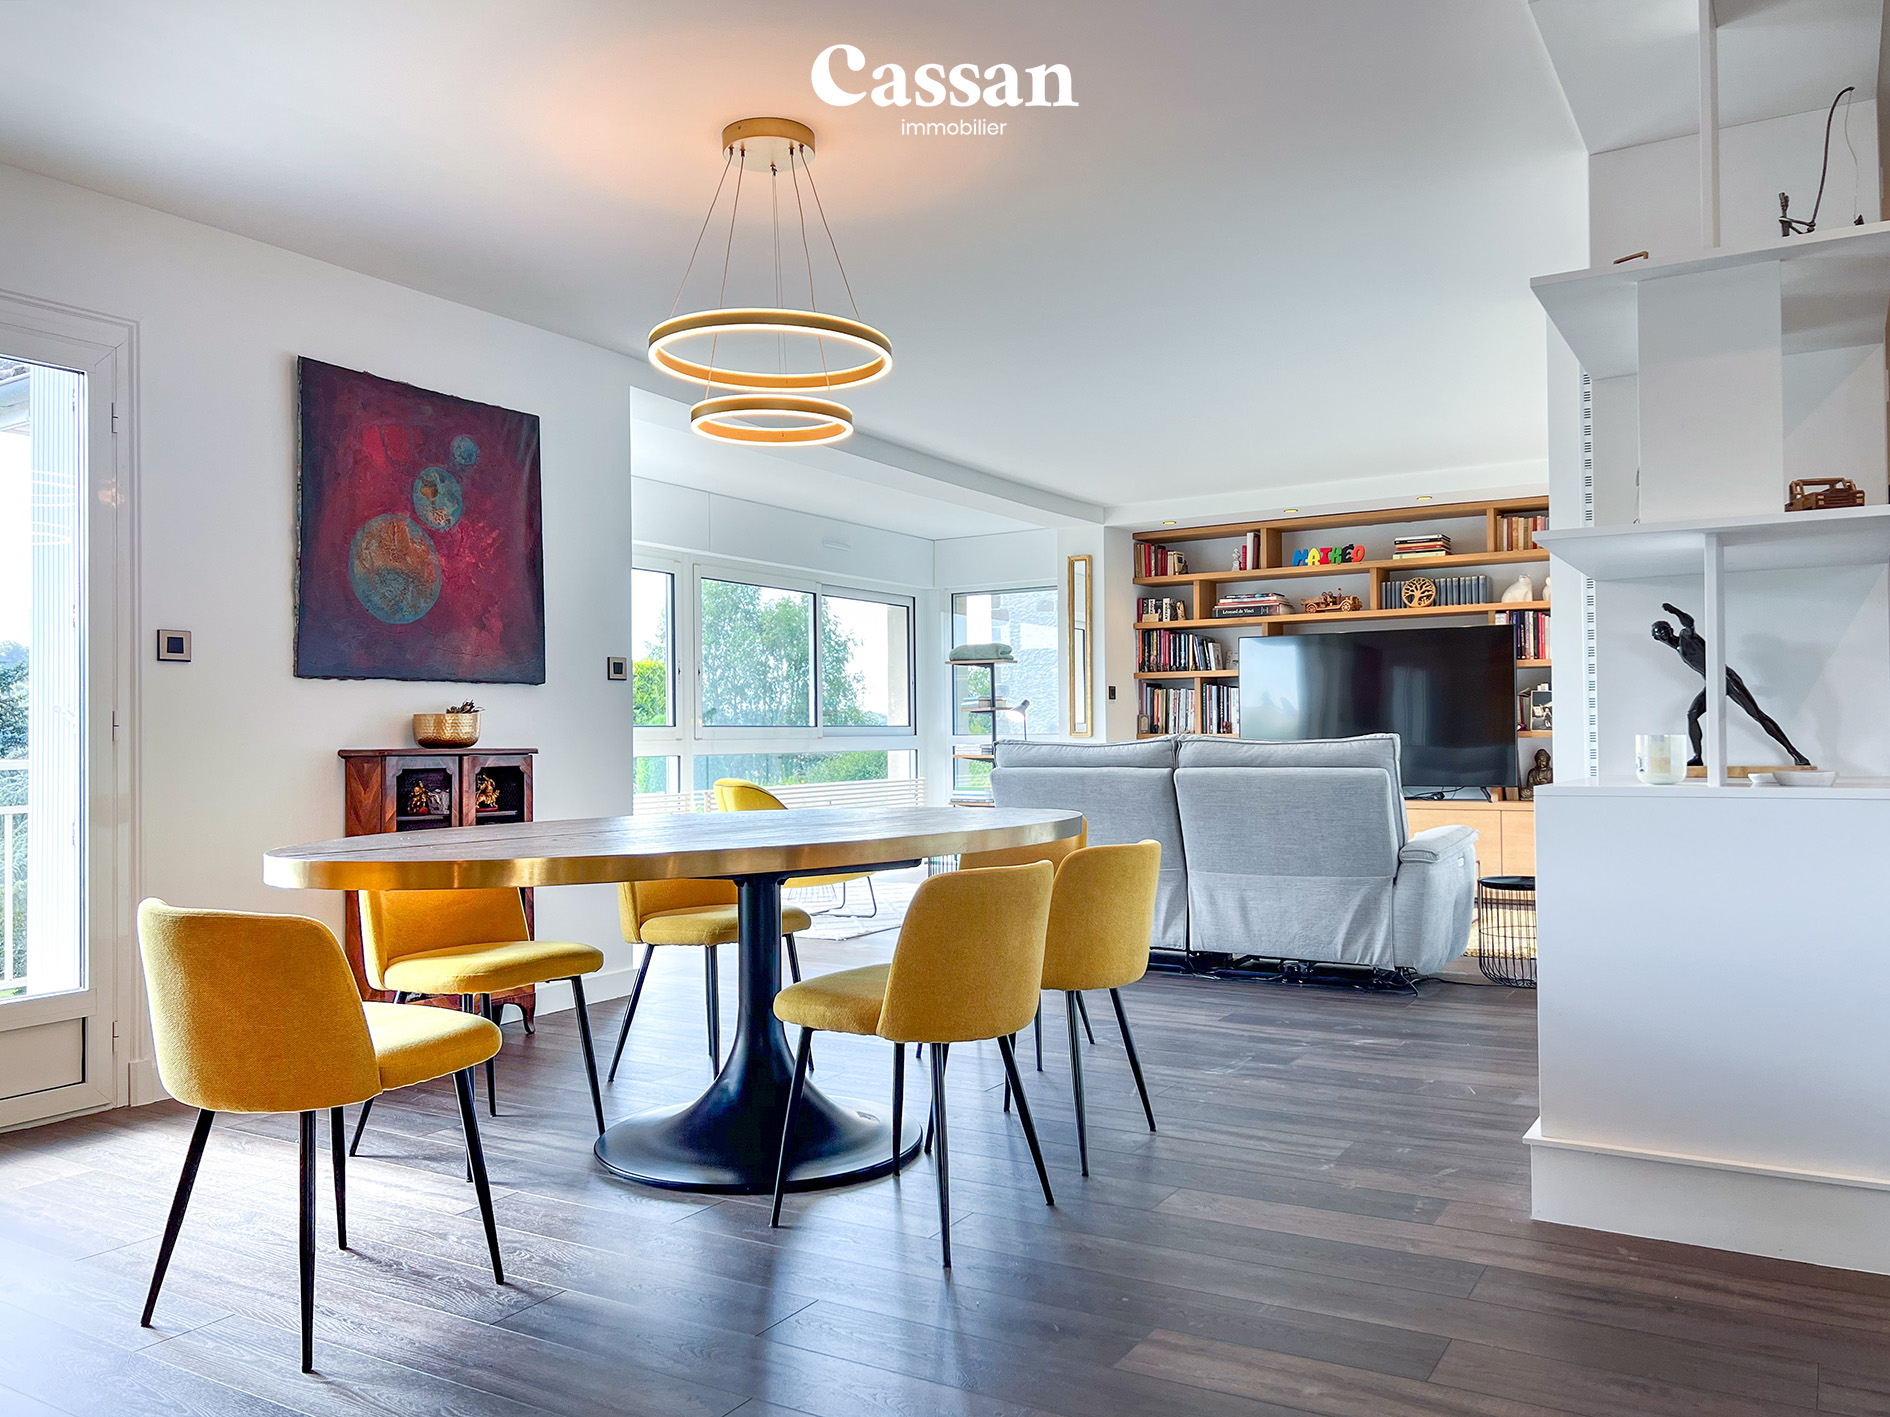 Séjour maison à vendre Sansac-de-Marmiesse Cassan immobilier